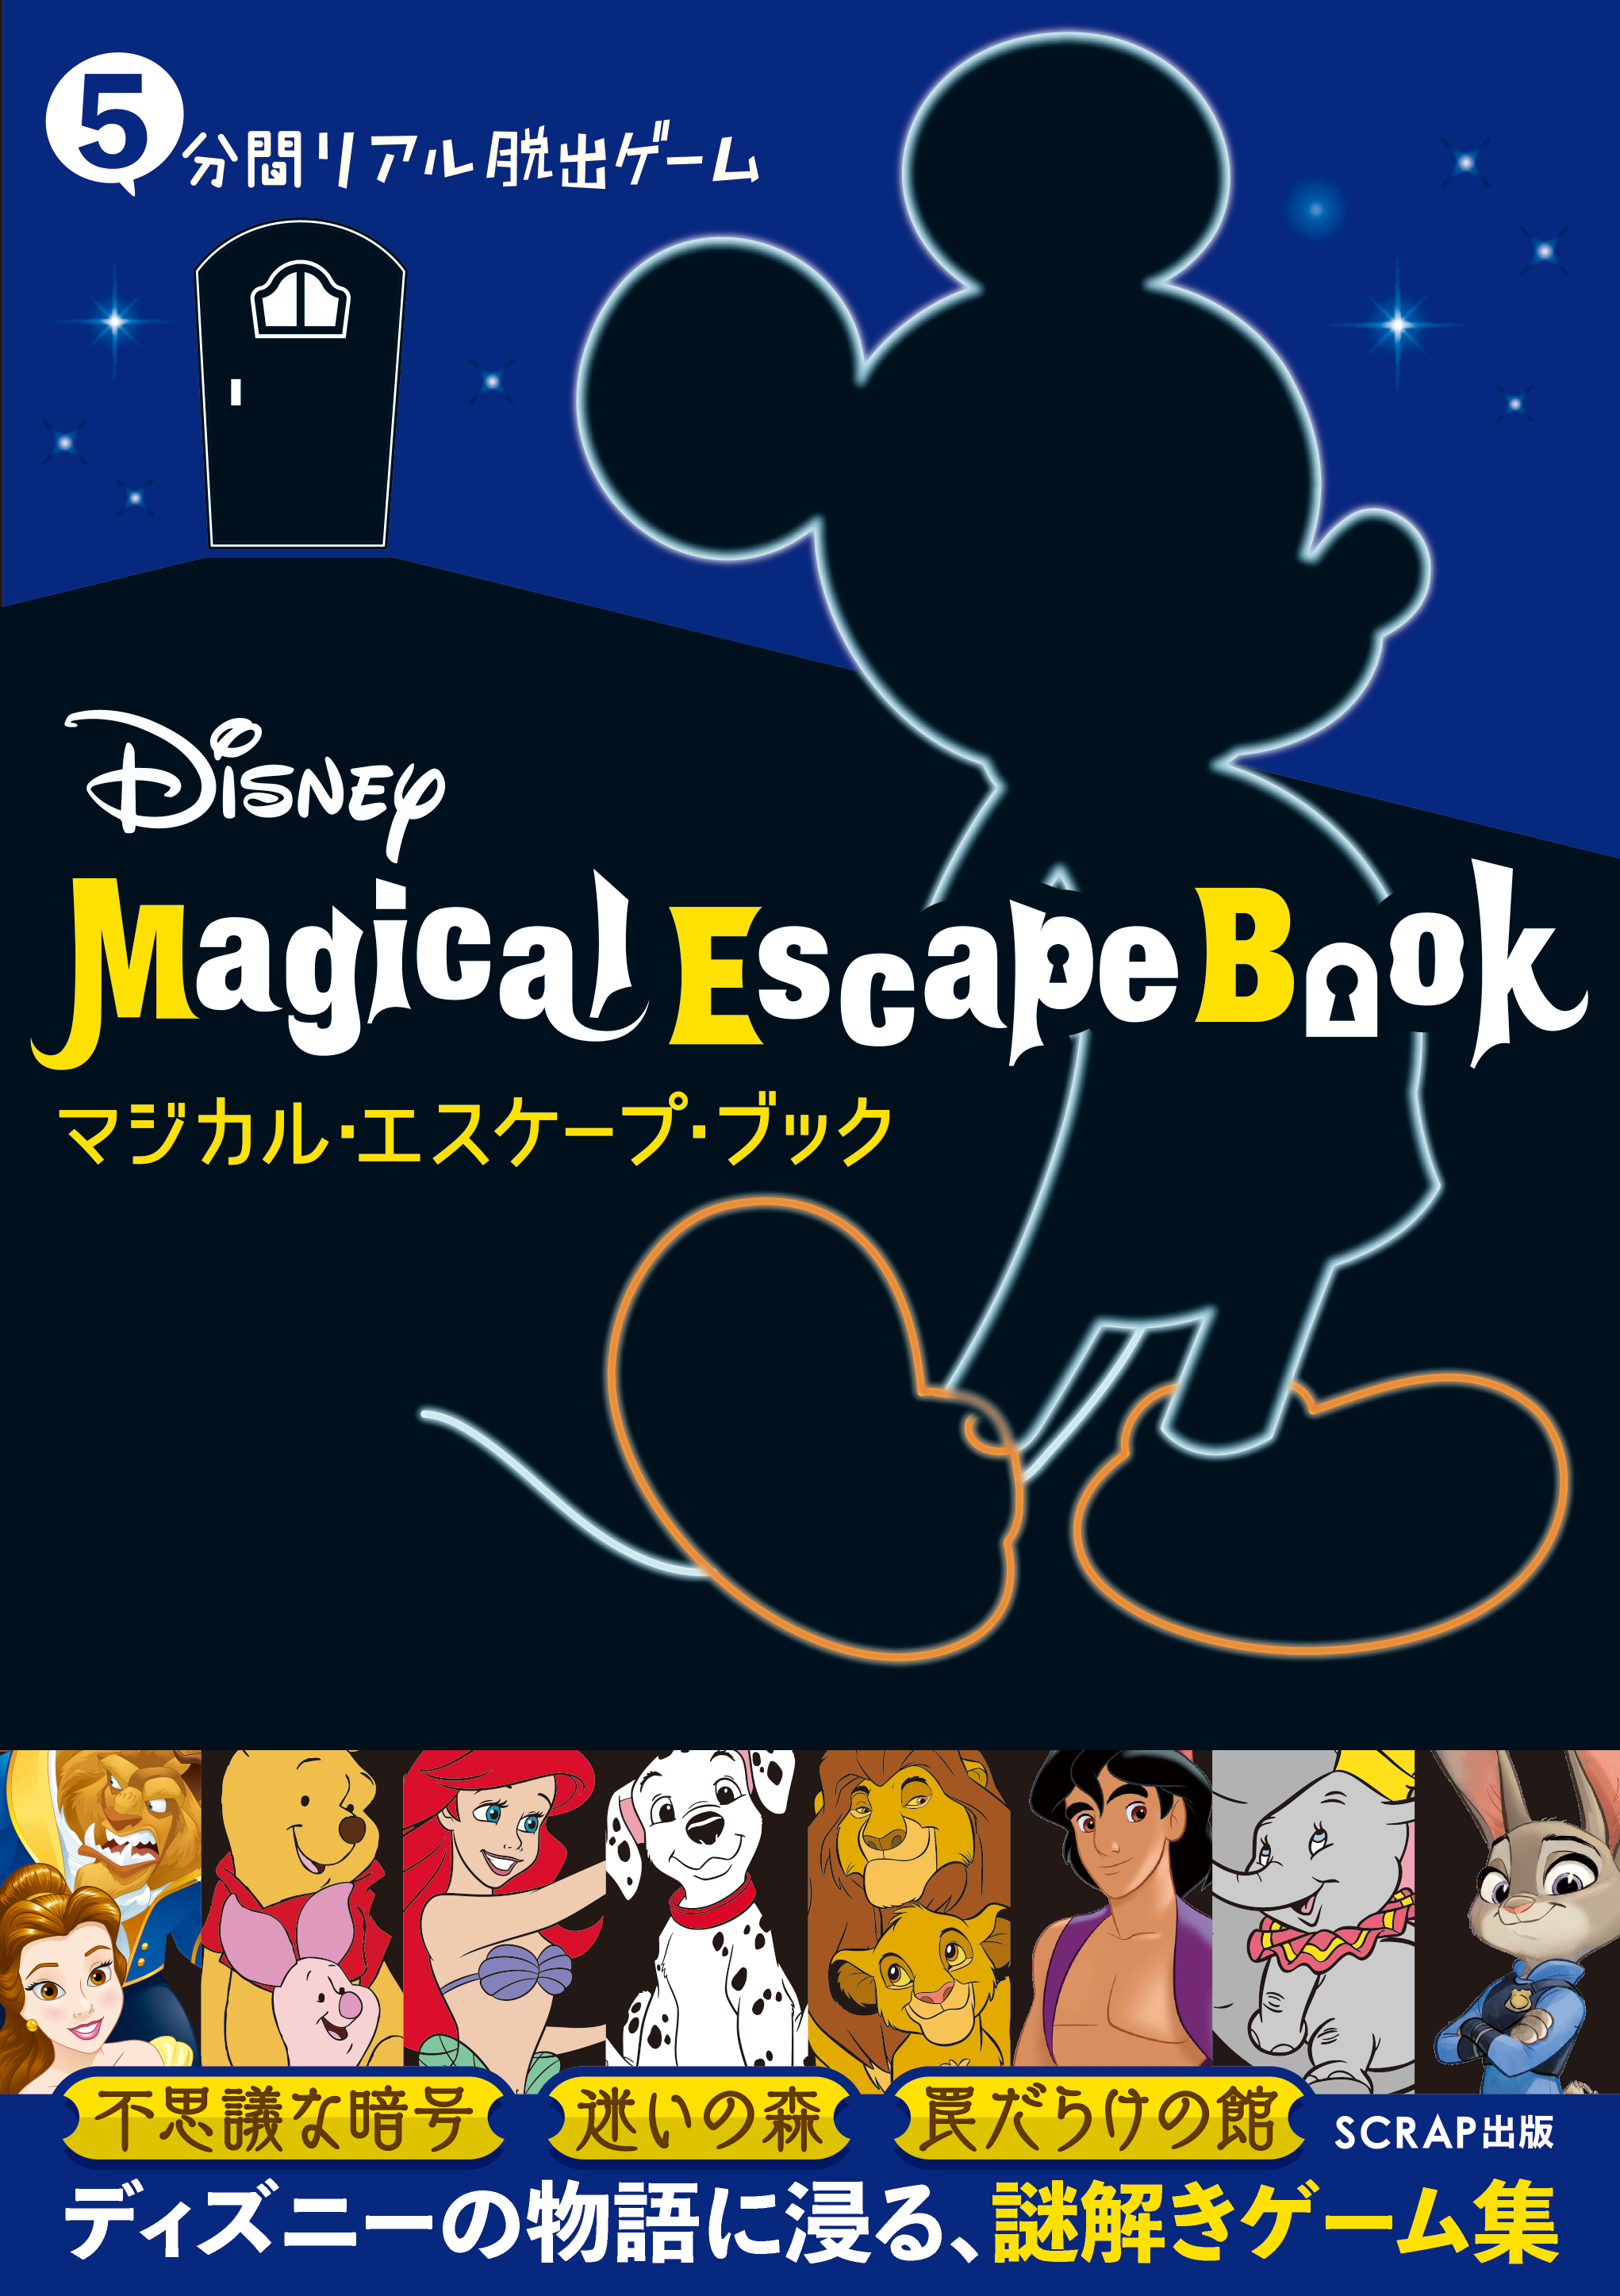 5分間リアル脱出ゲーム Disney Magical Escape Book 本日より予約開始 お知らせ リアル脱出ゲーム 体験型謎解きエンターテインメント